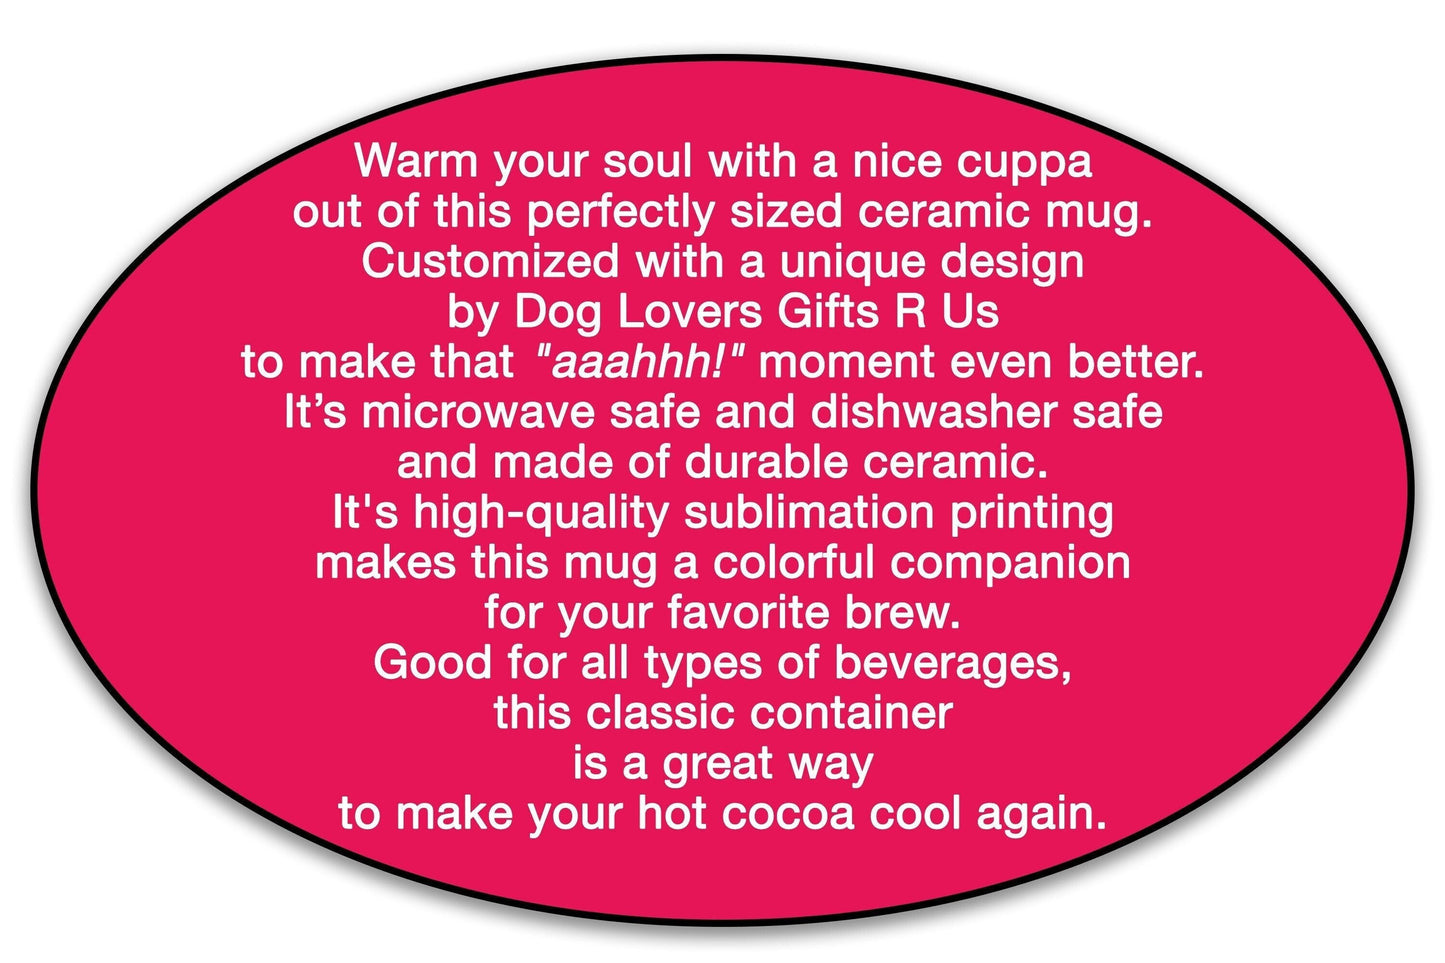 Personalized German Shepherd Dog Mug, Dog Mom Coffee Mug, Dog Lover Mug, Pet Mug Birthday Gift, Dog Coffee Cup, Dog Gifts, Custom Dog Mug